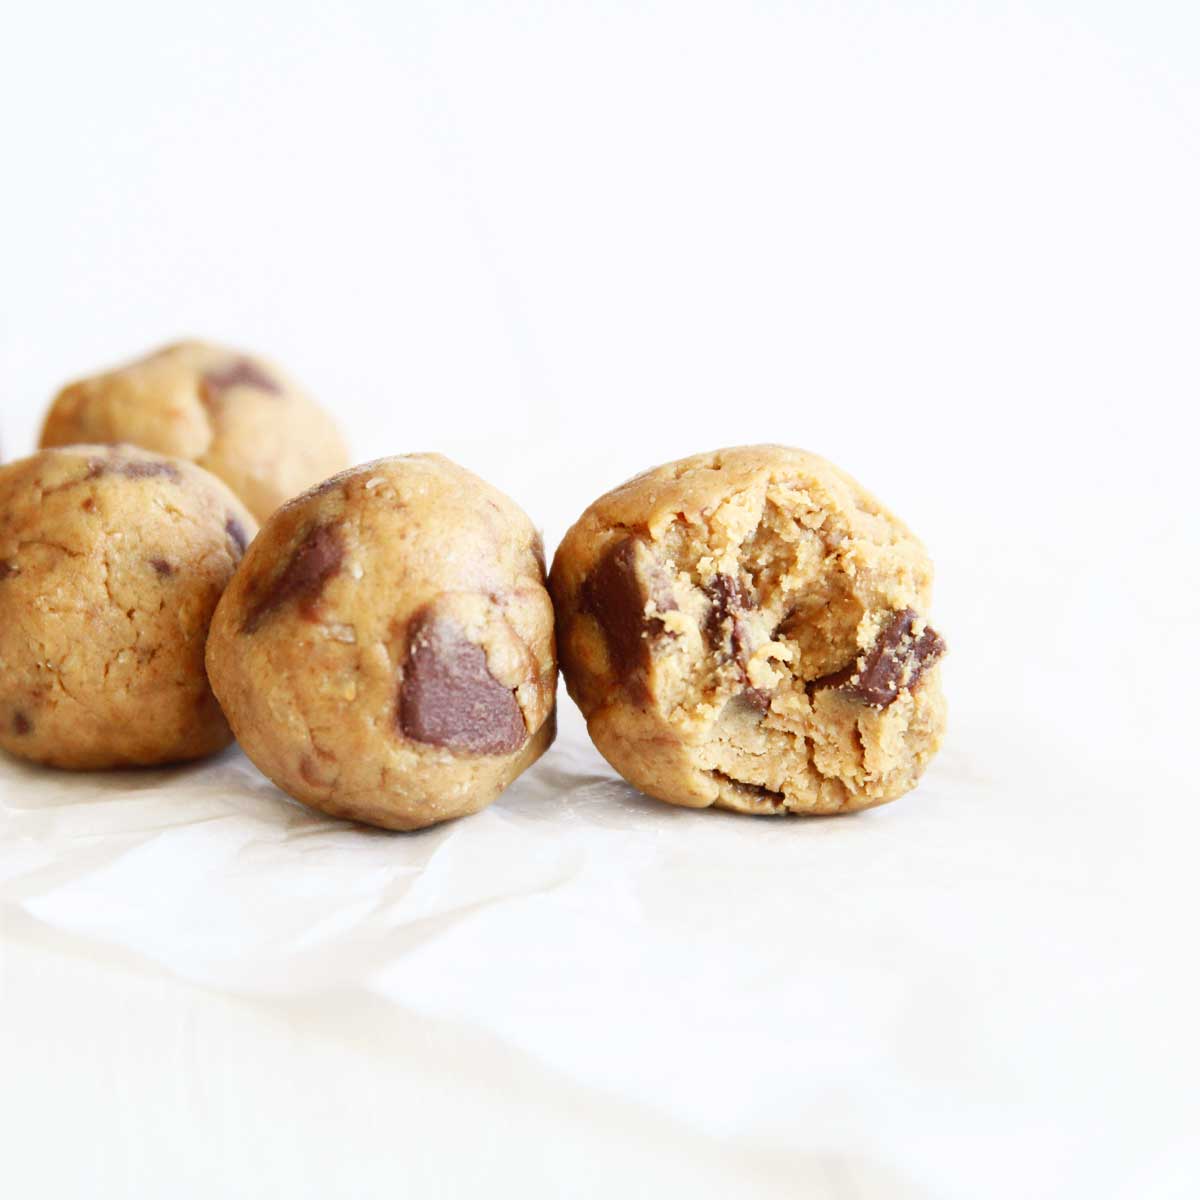 Peanut Butter Cookie Dough Protein Balls (No-Bake, Vegan Recipe with Oats) - Peanut Butter Glaze